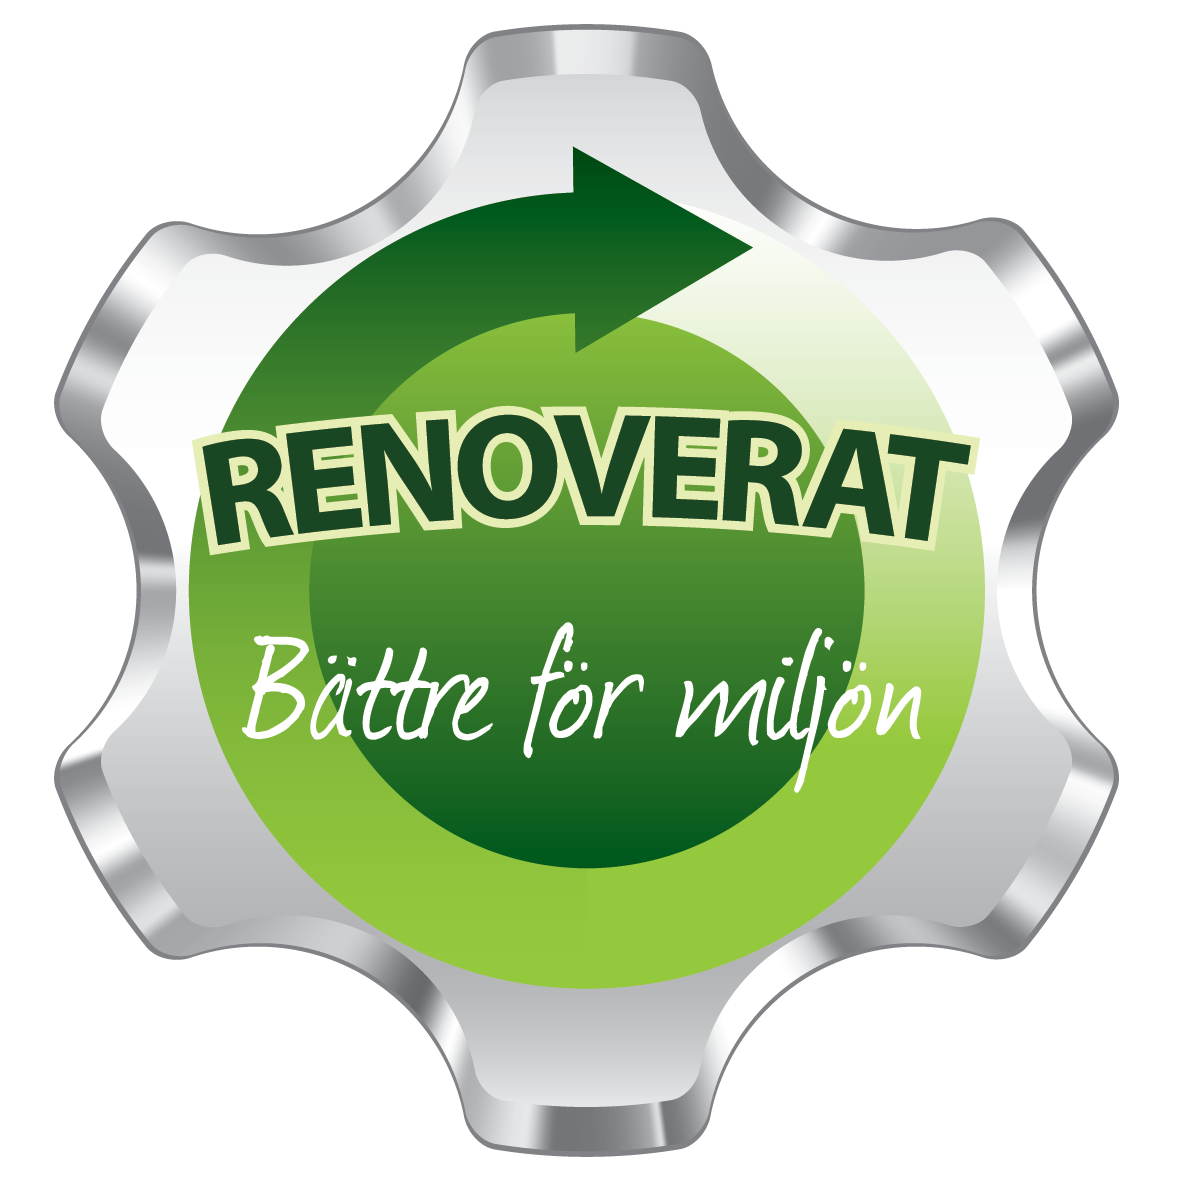 Renoverat - bättre för miljön